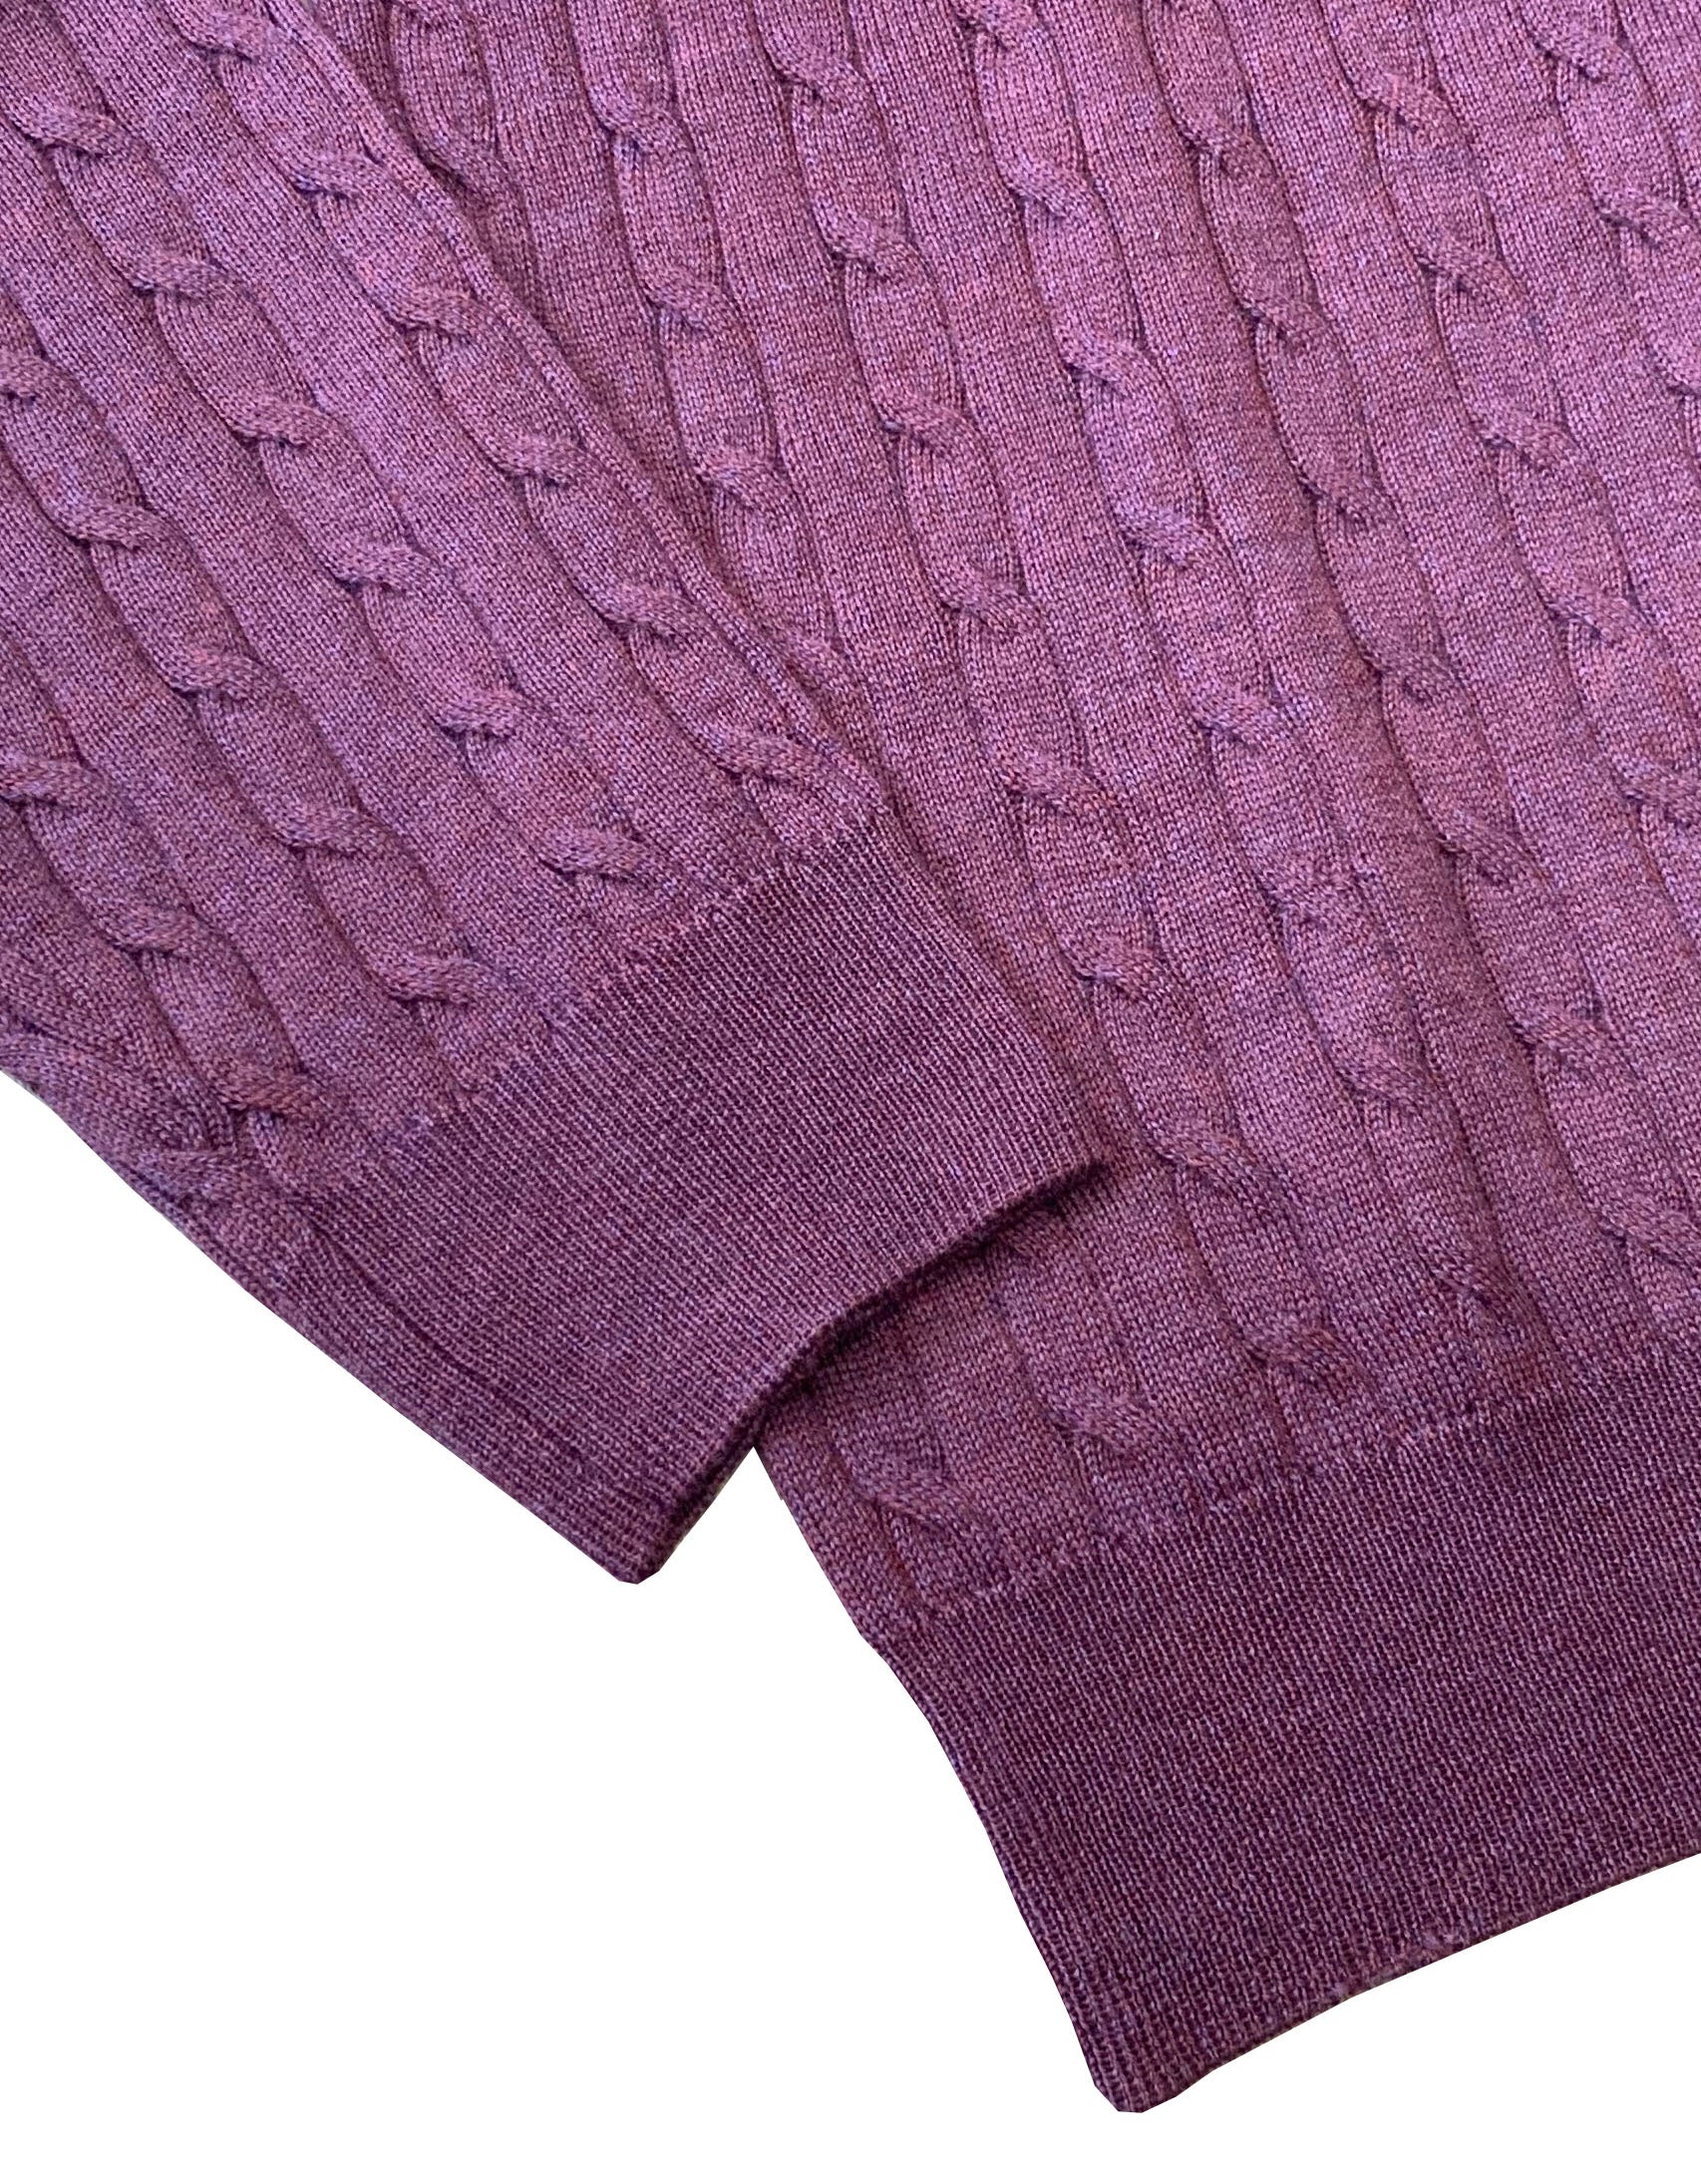 STENSTROMS - Purple Merino Cable Knit Crew Neck Sweater 4222851355650